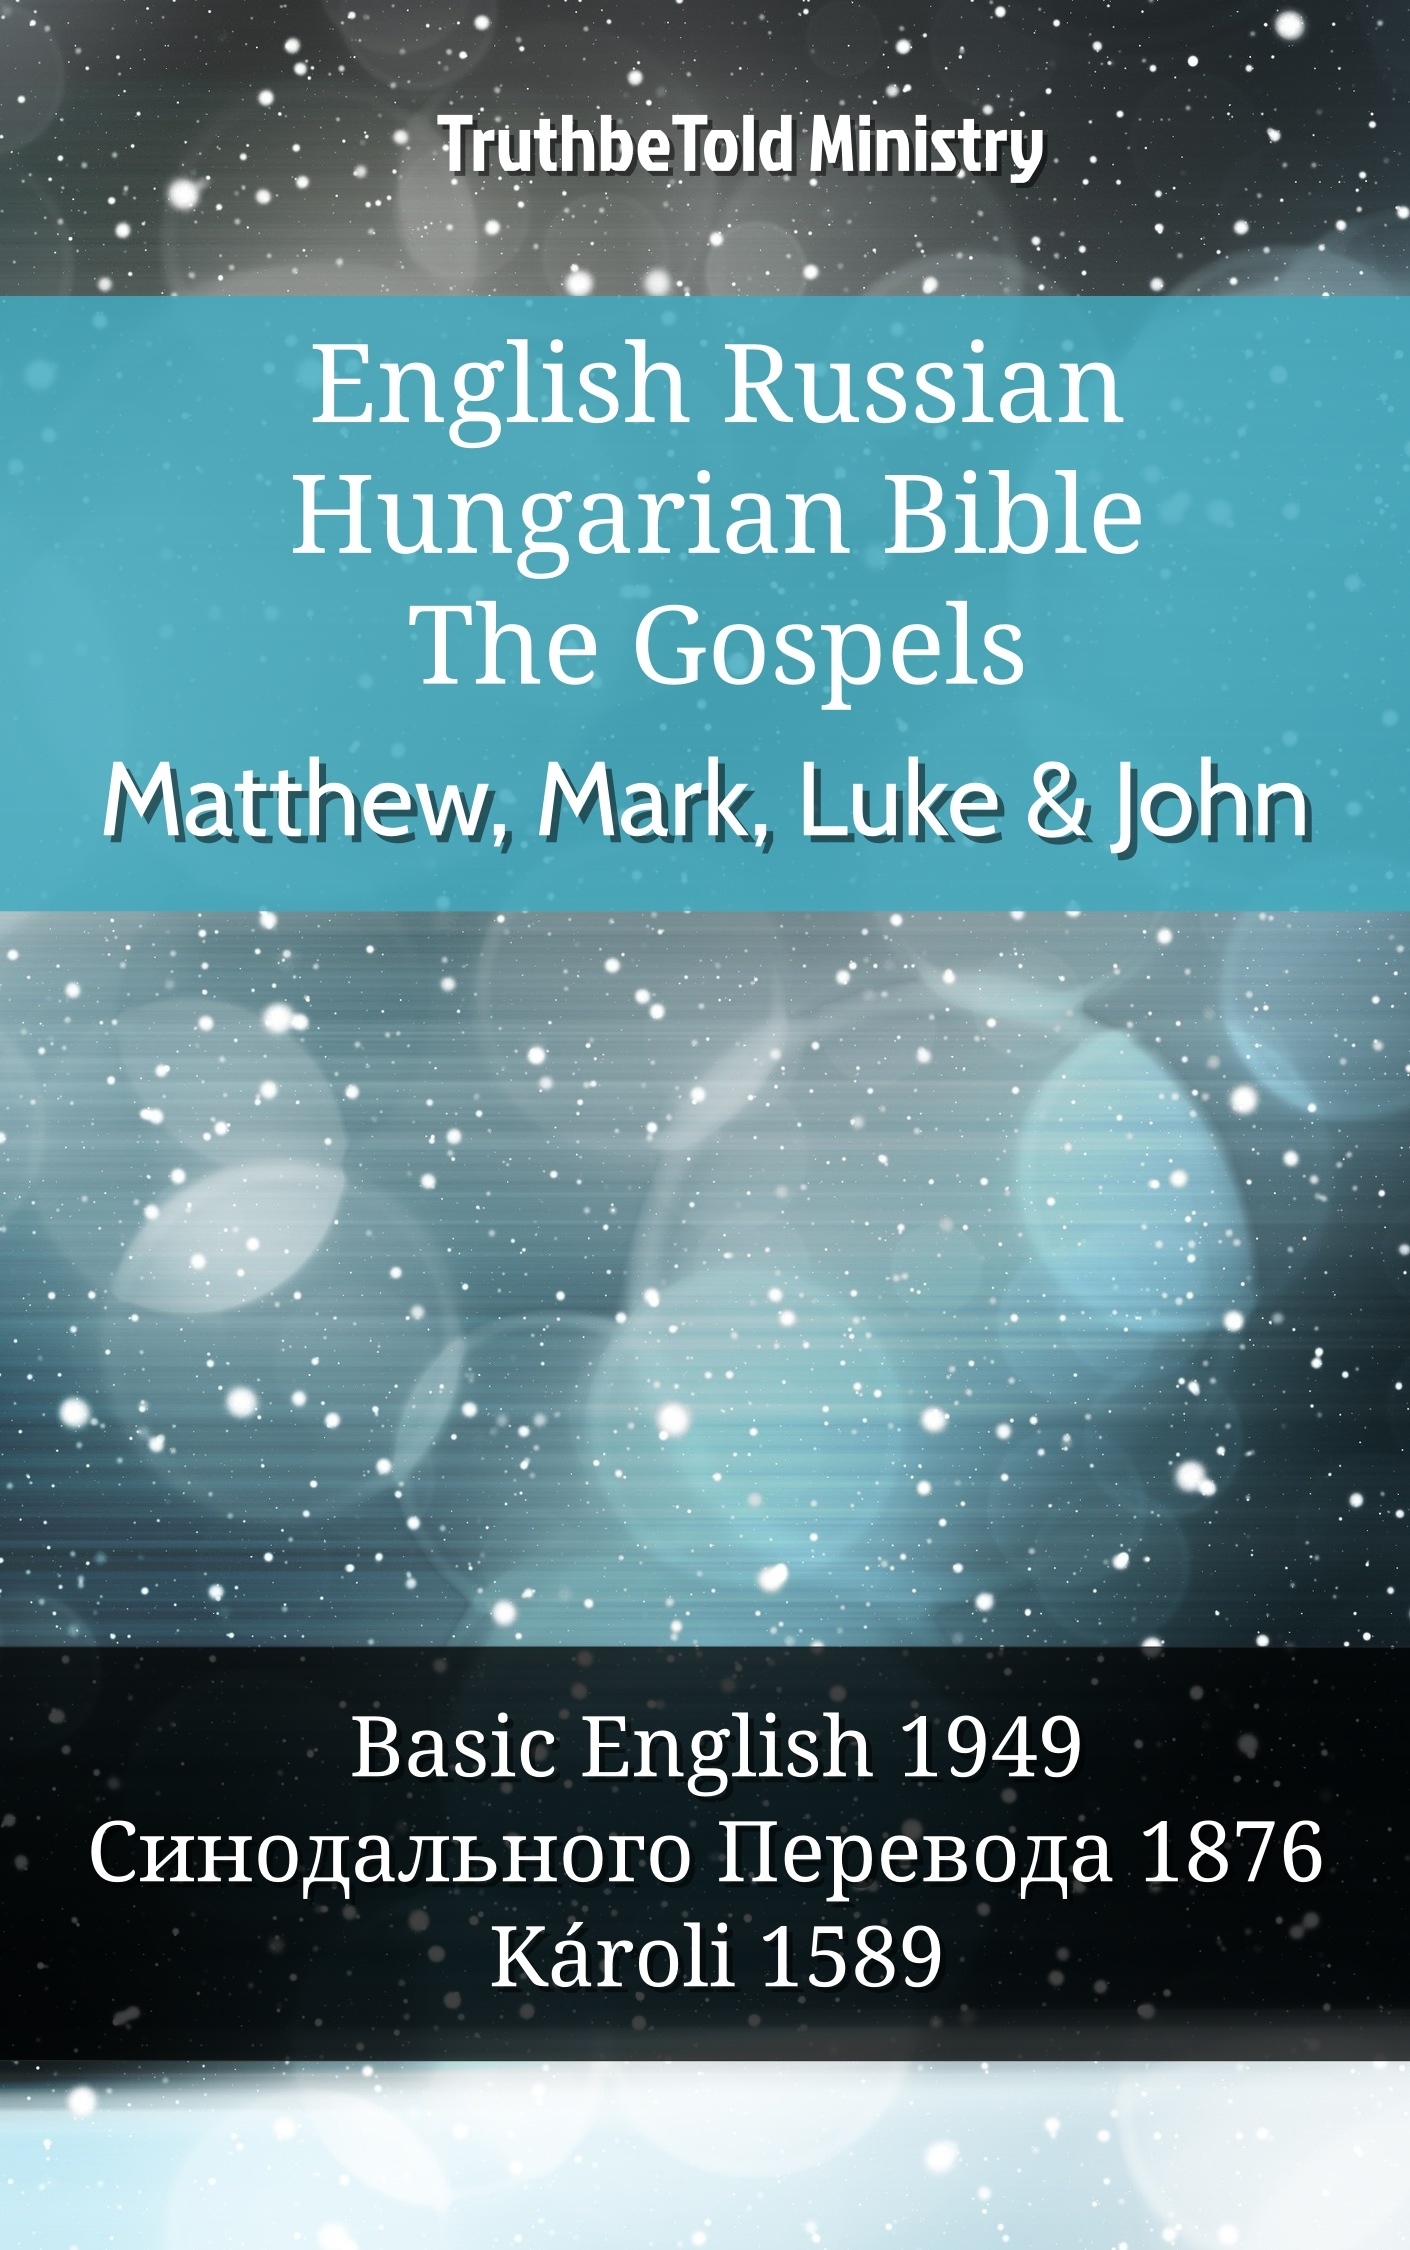 English Russian Hungarian Bible - The Gospels - Matthew, Mark, Luke & John